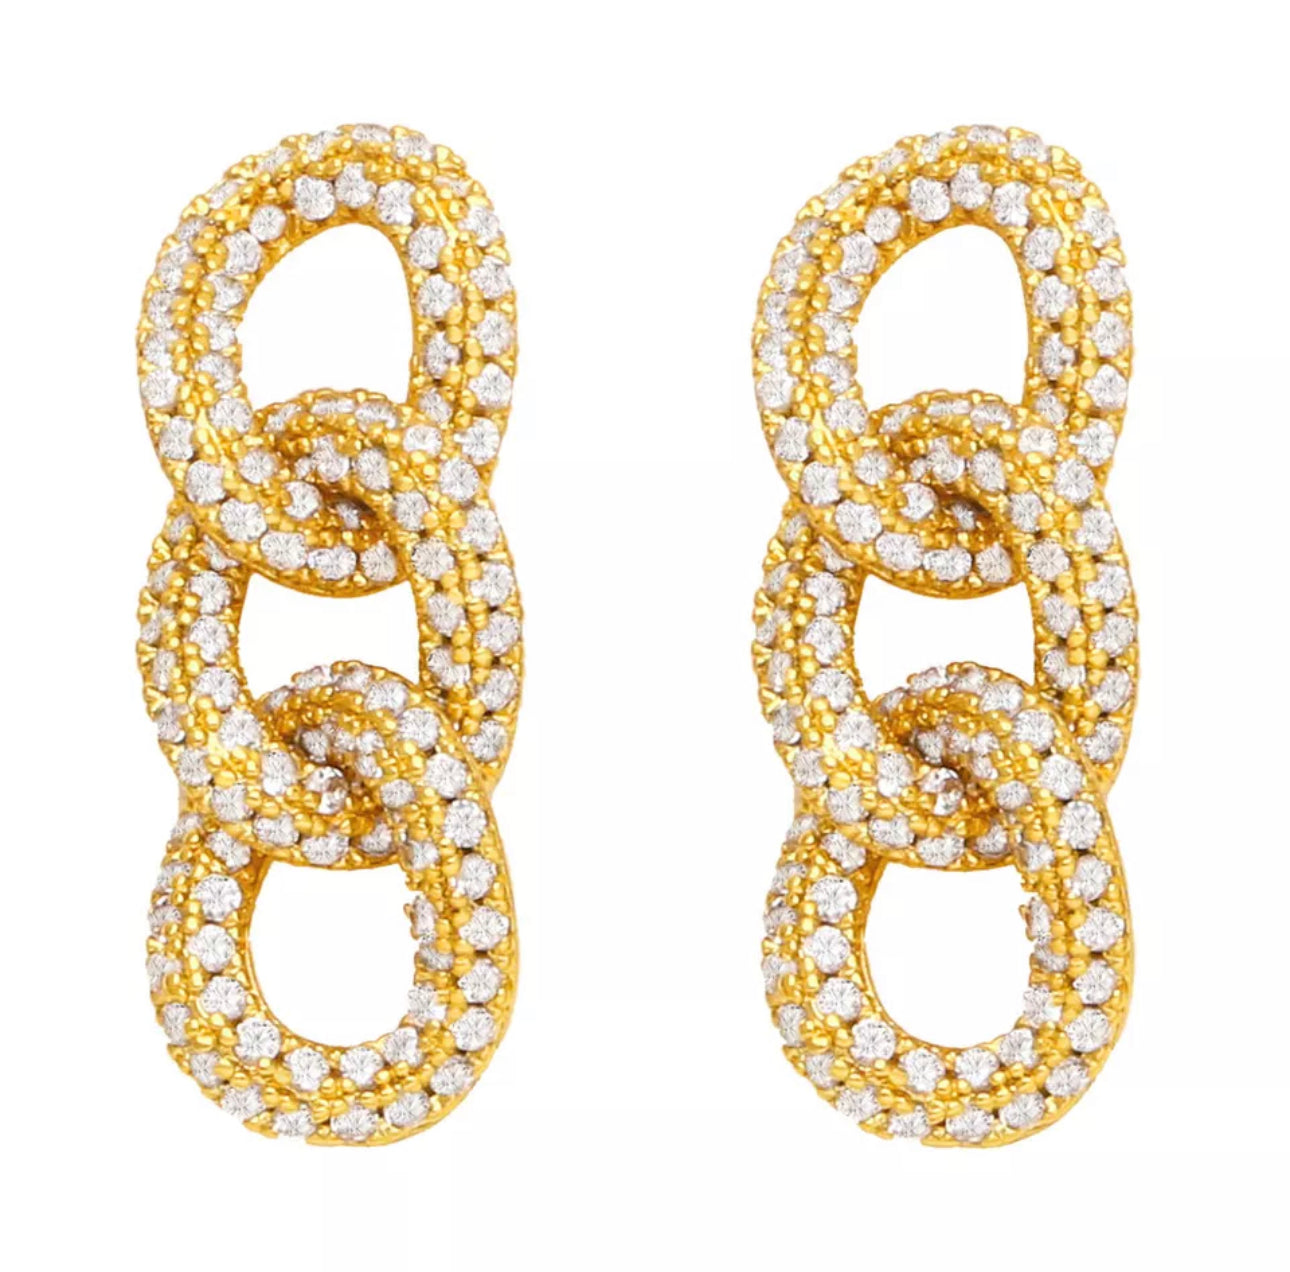 Clear chain link earrings 